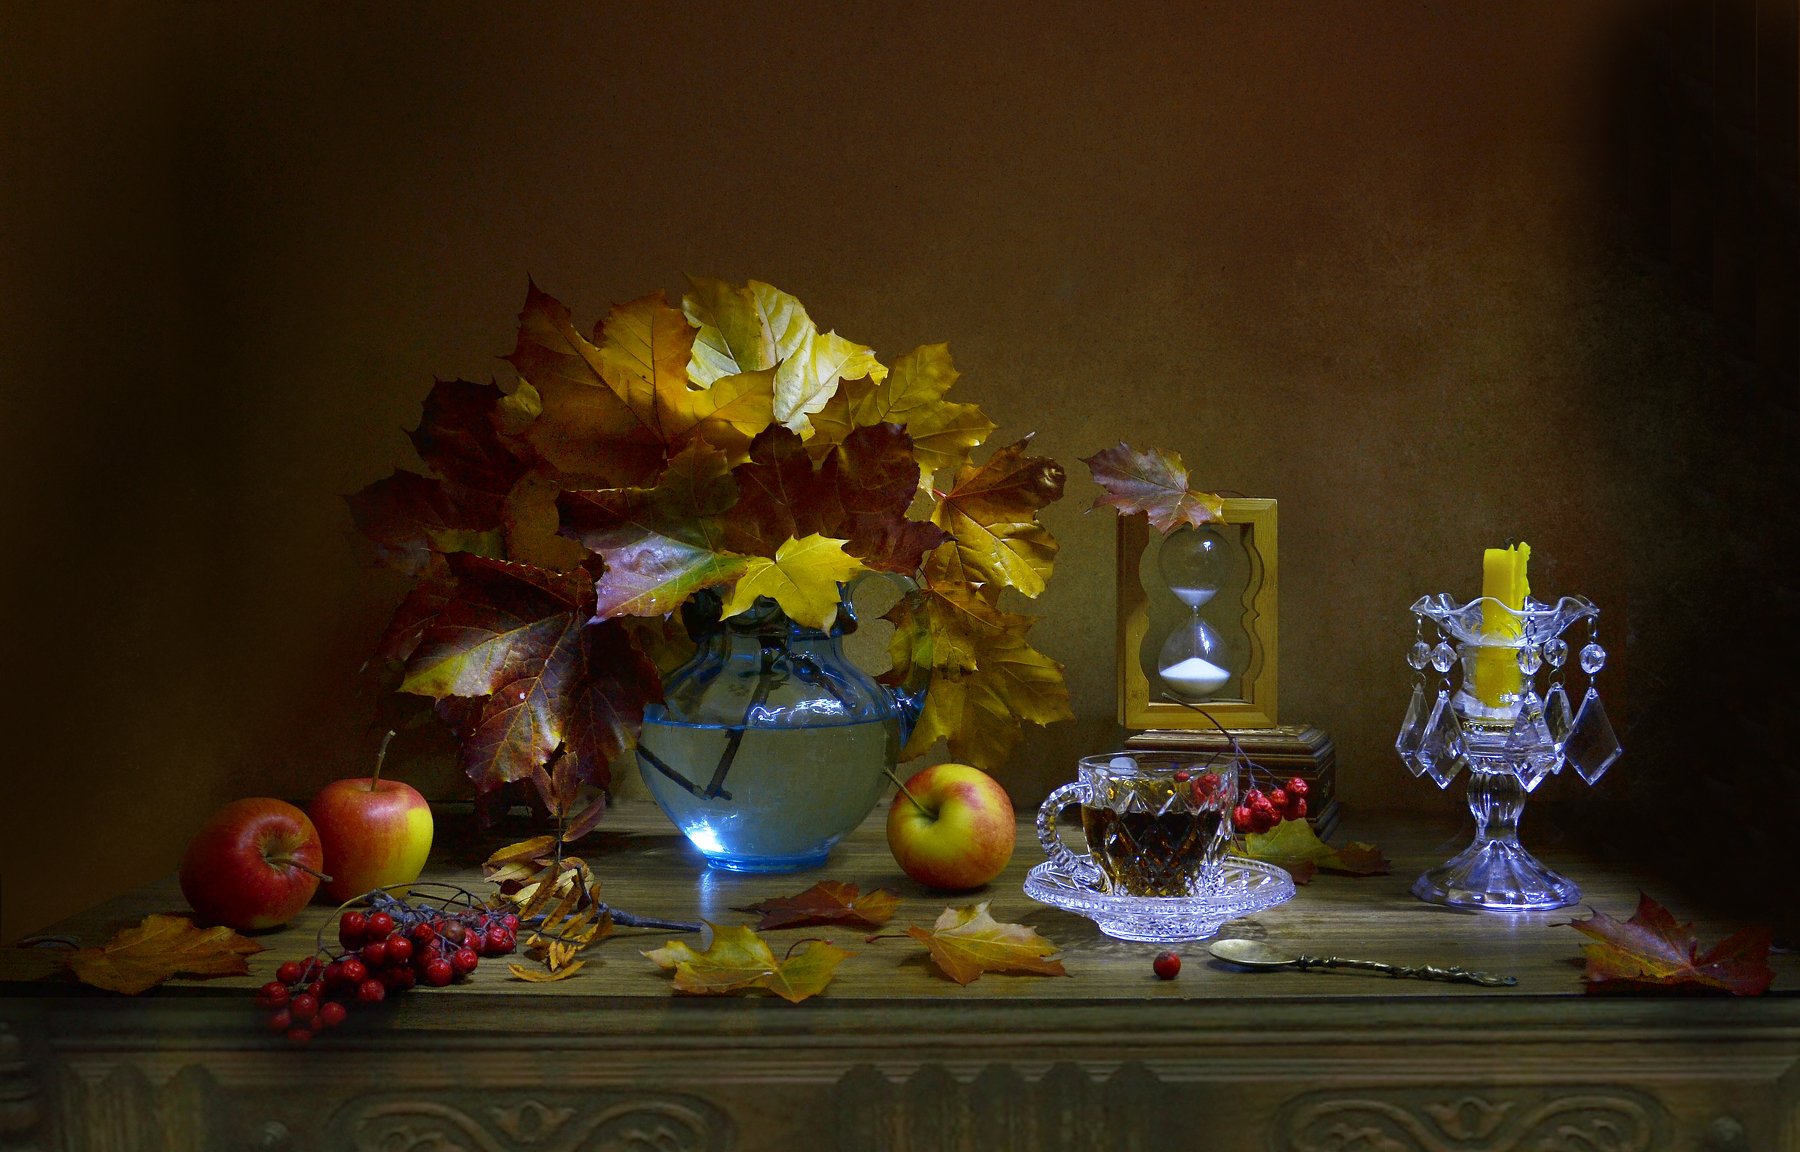 still life, натюрморт,фото натюрморт, стихи, октябрь, осень,кленовые листья, свеча, подсвечник,песочные часы,рябина, яблоки, хрусталь, чашка чая, Колова Валентина